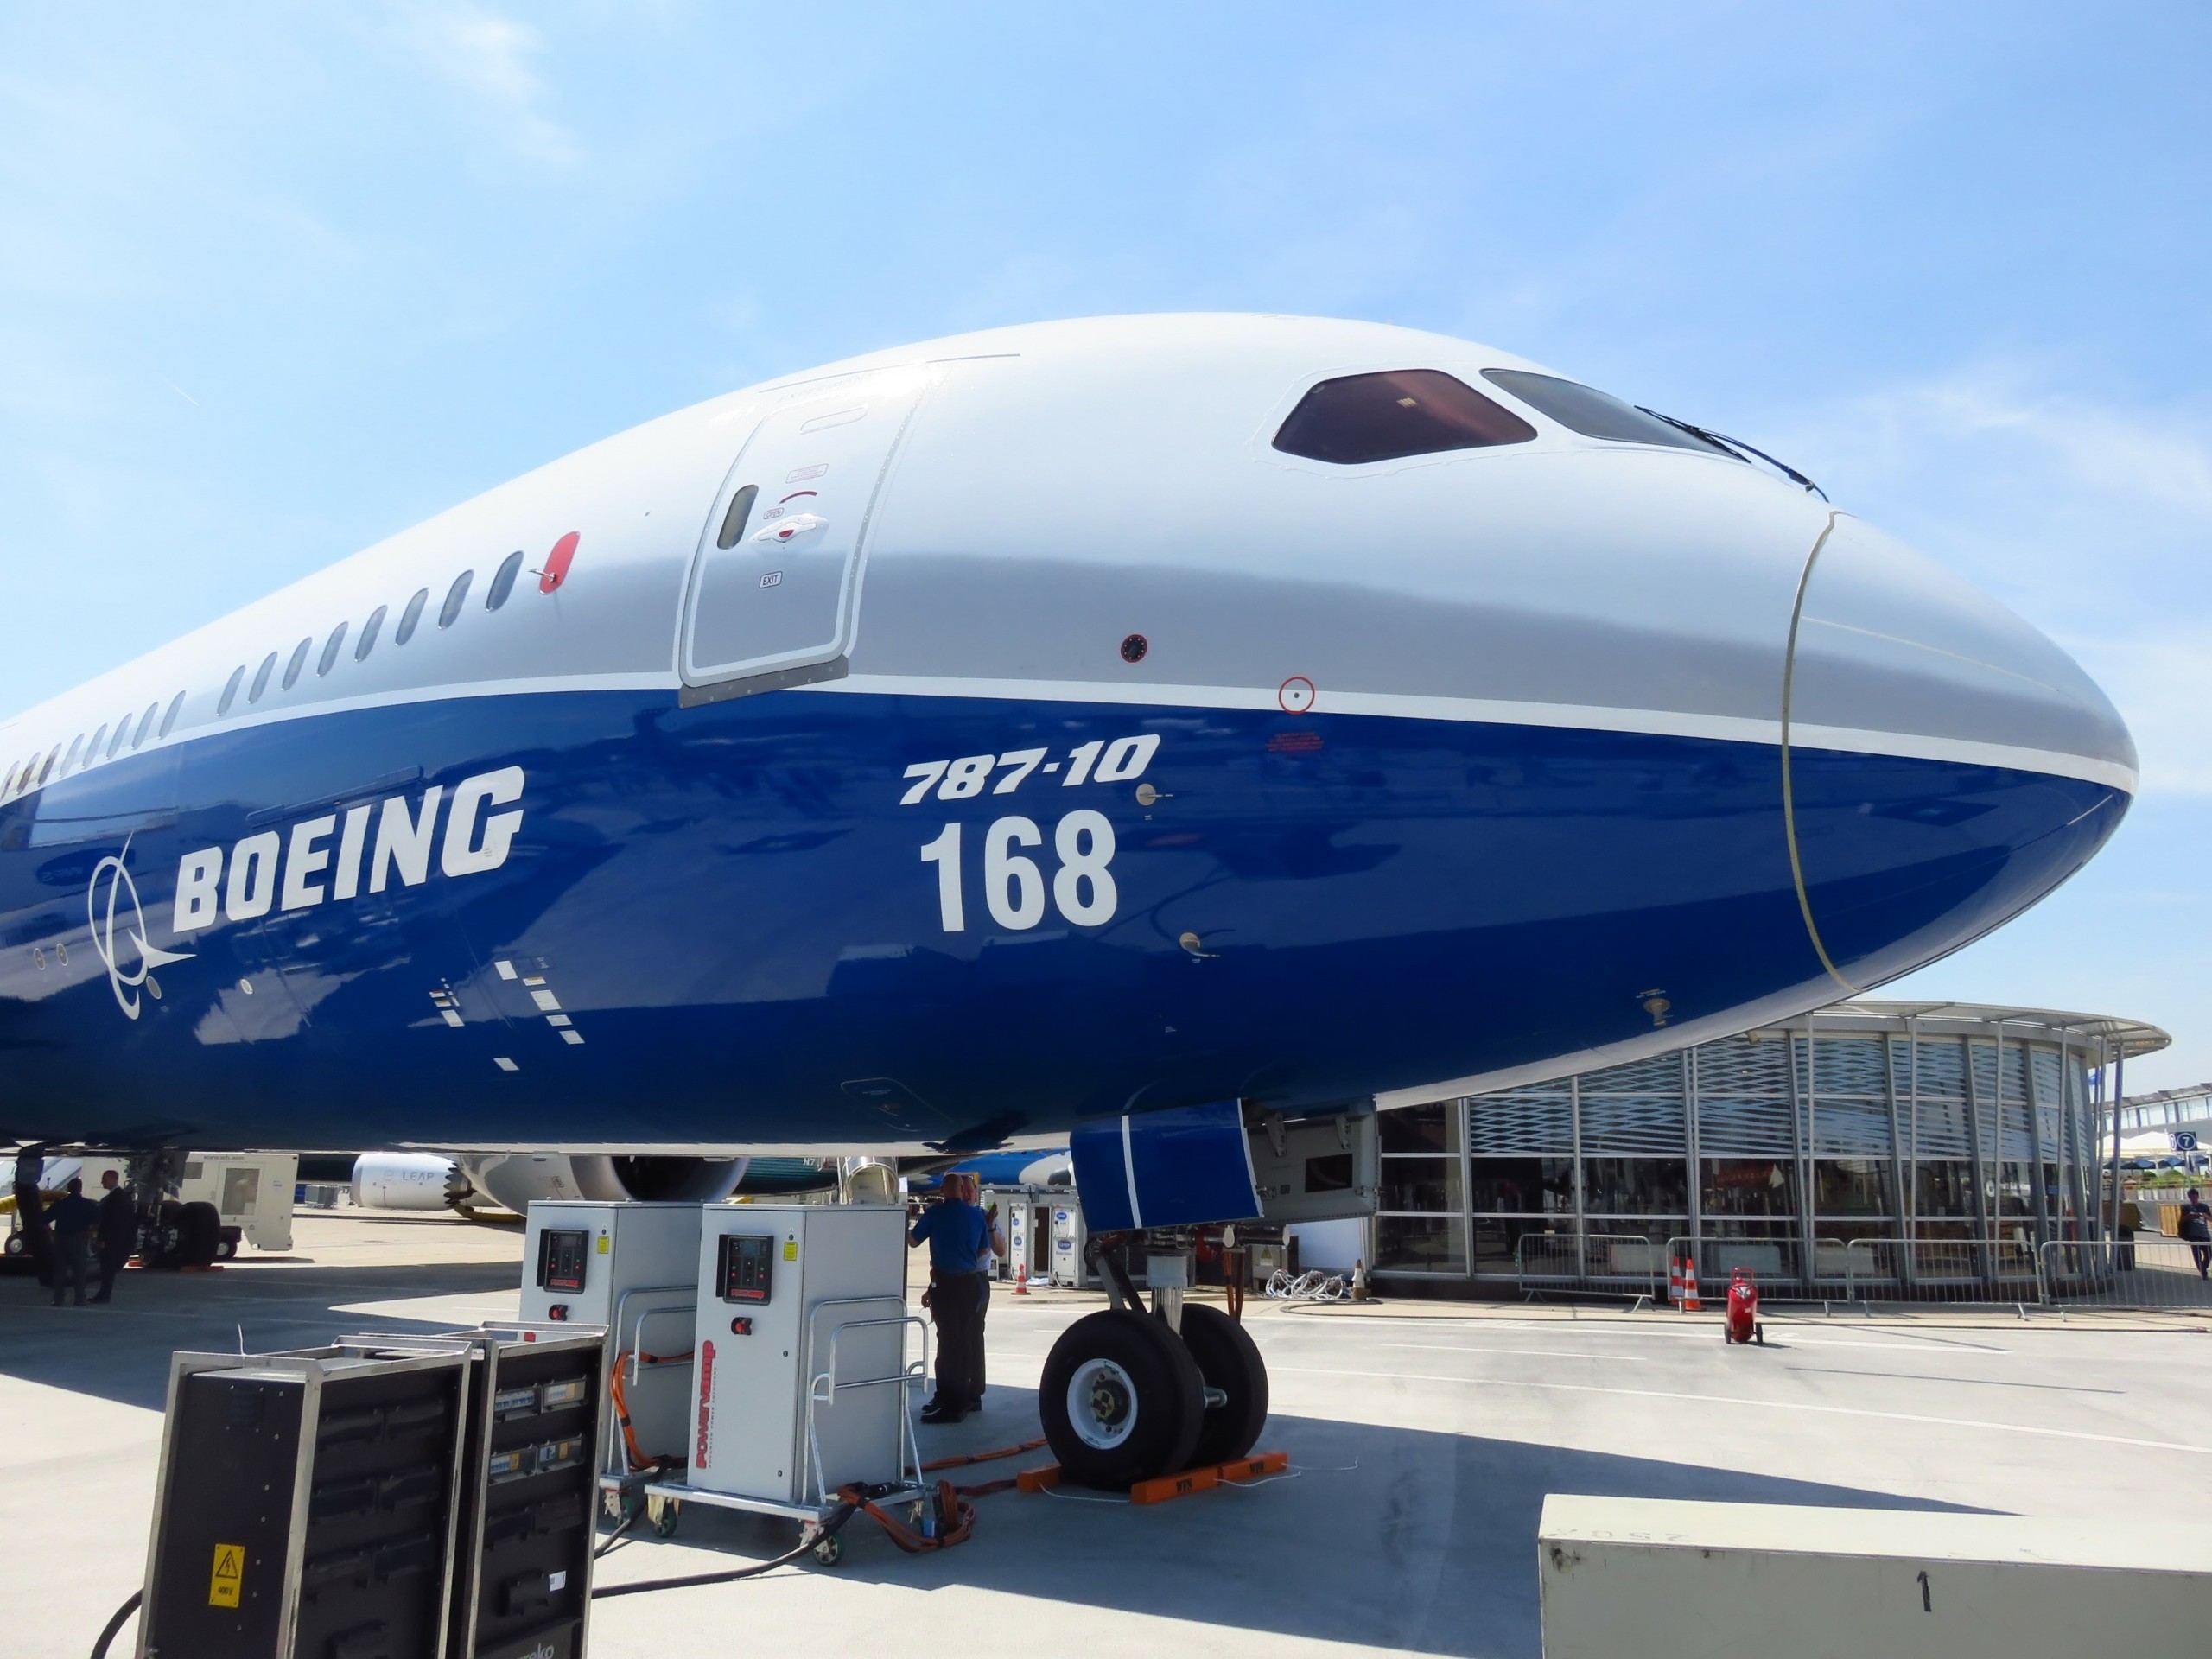 Boeing Aktie nach Großauftrag im Steigflug!